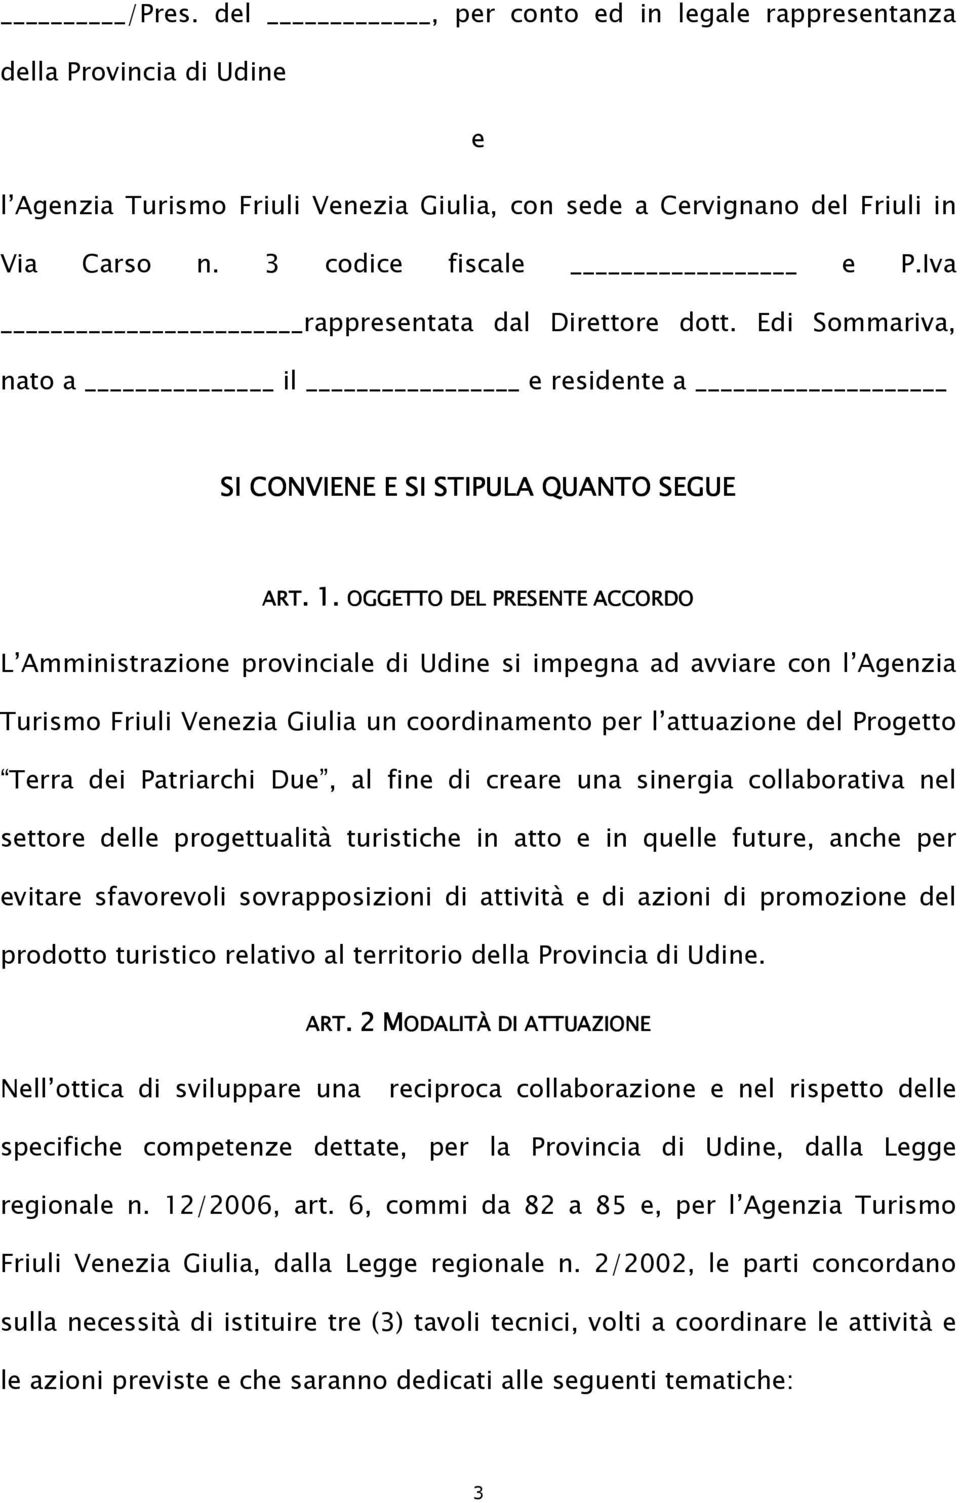 L Amministrazione provinciale di Udine si impegna ad avviare con l Agenzia Turismo Friuli Venezia Giulia un coordinamento per l attuazione del Progetto Terra dei Patriarchi Due, al fine di creare una